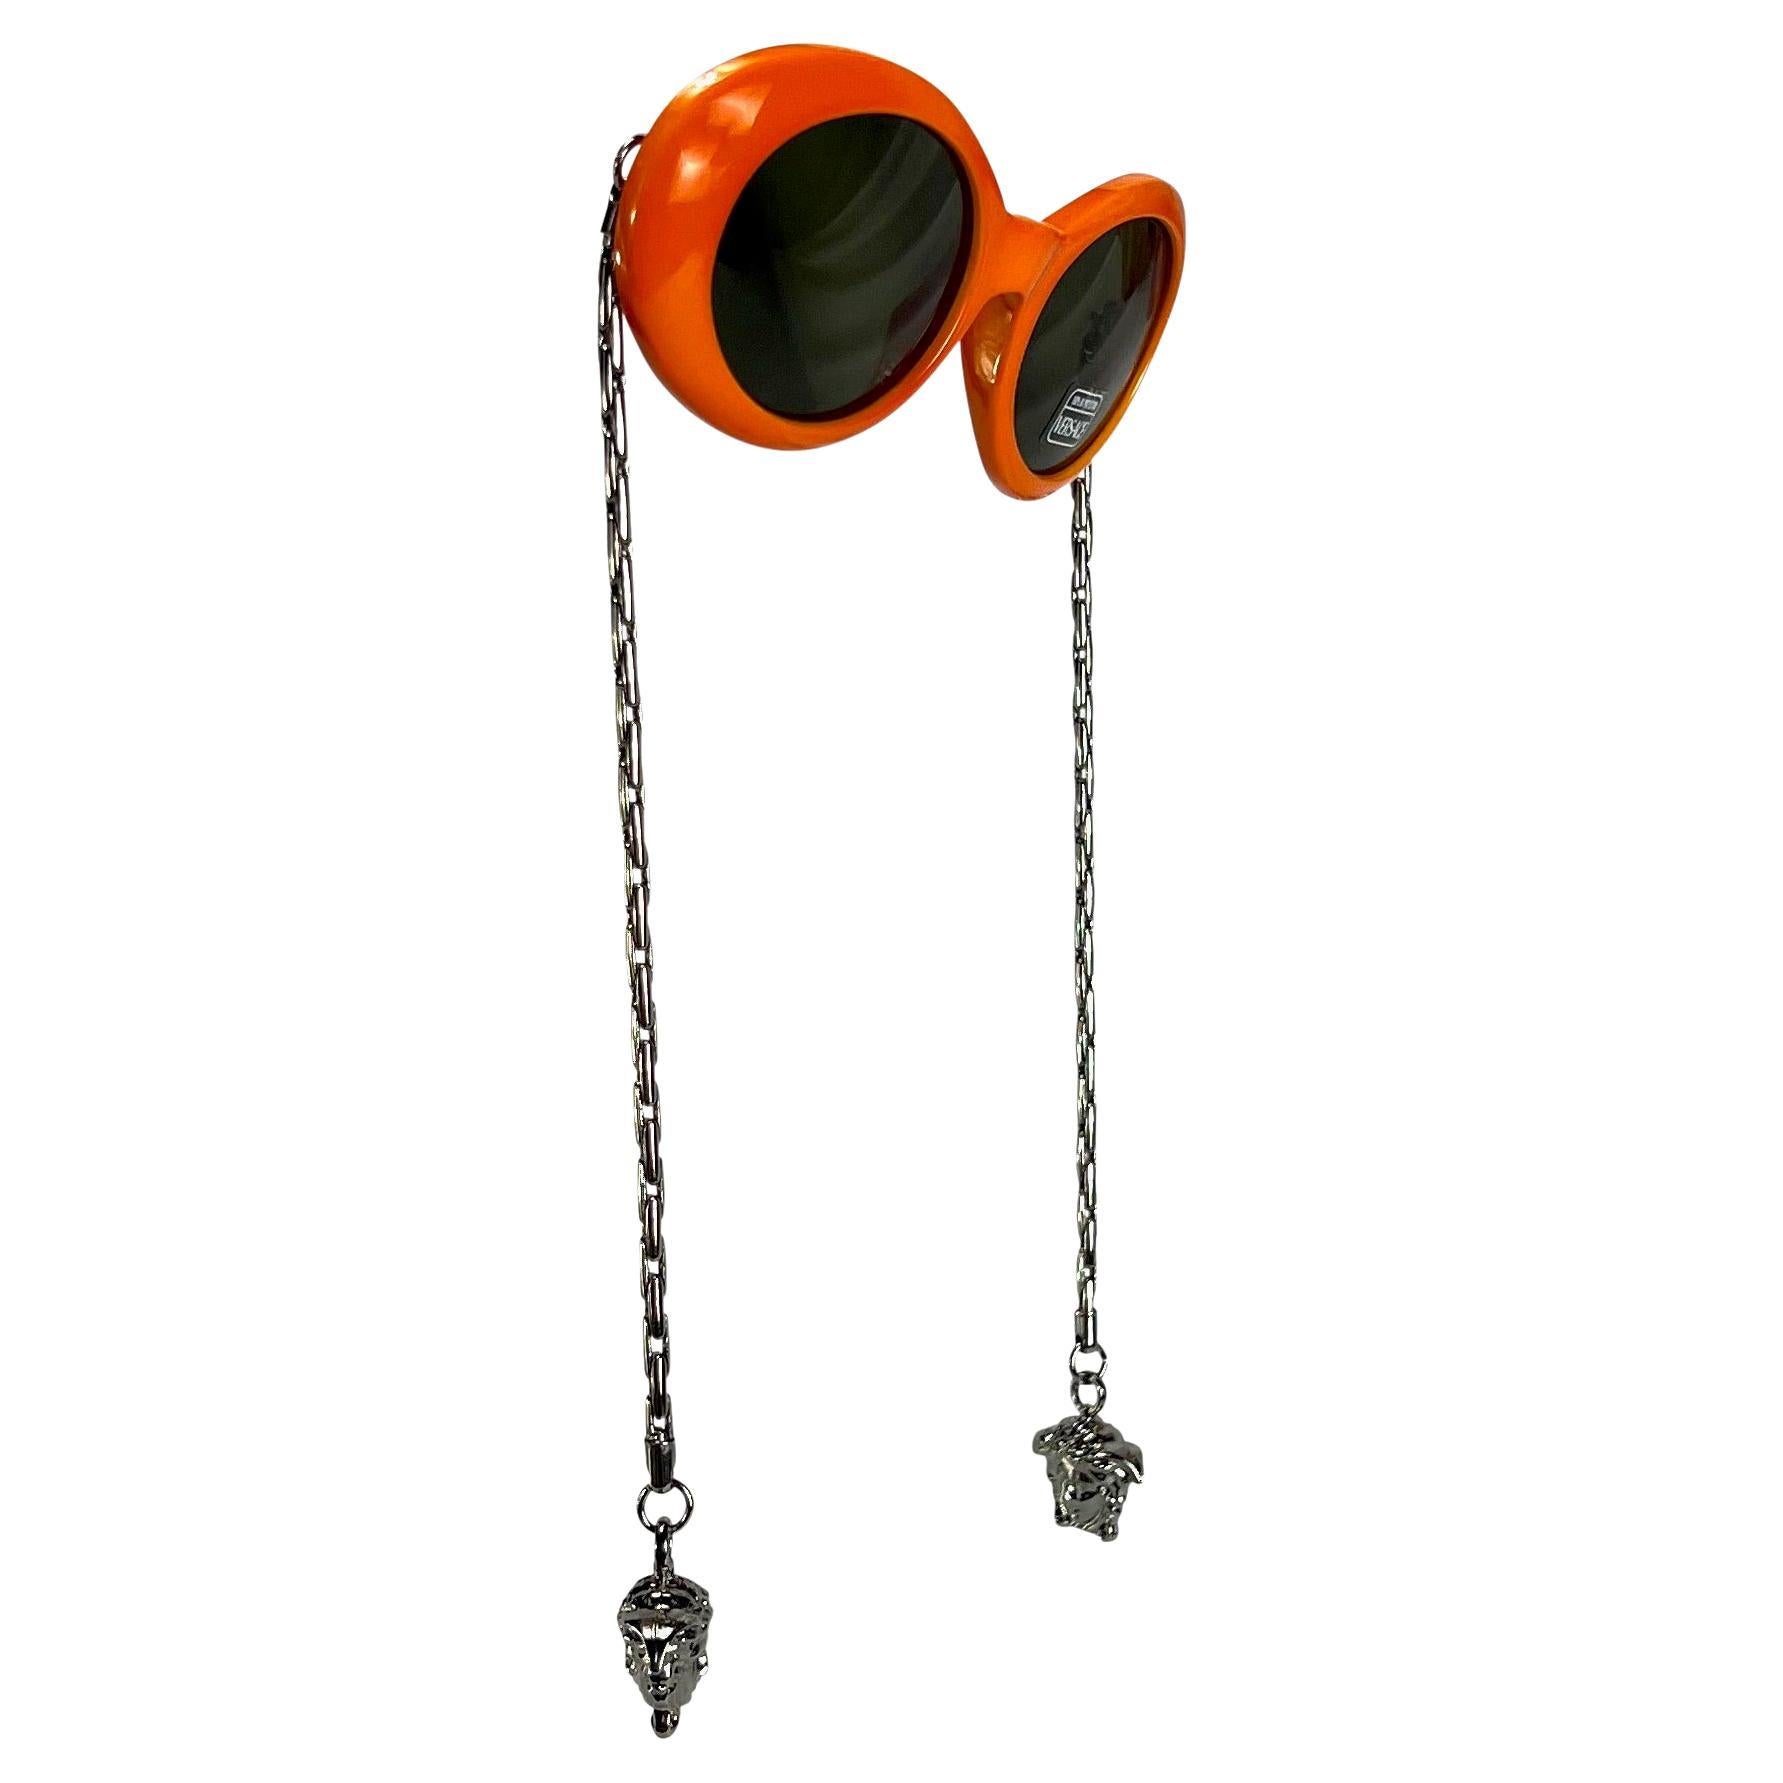 Nous vous présentons une fabuleuse paire de lunettes de soleil Gianni Versace, de couleur orange vibrante, à branches rondes et chaîne en ton argenté, conçue par Gianni Versace. Ces lunettes de soleil ultra-rare de 1996 arborent le célèbre style